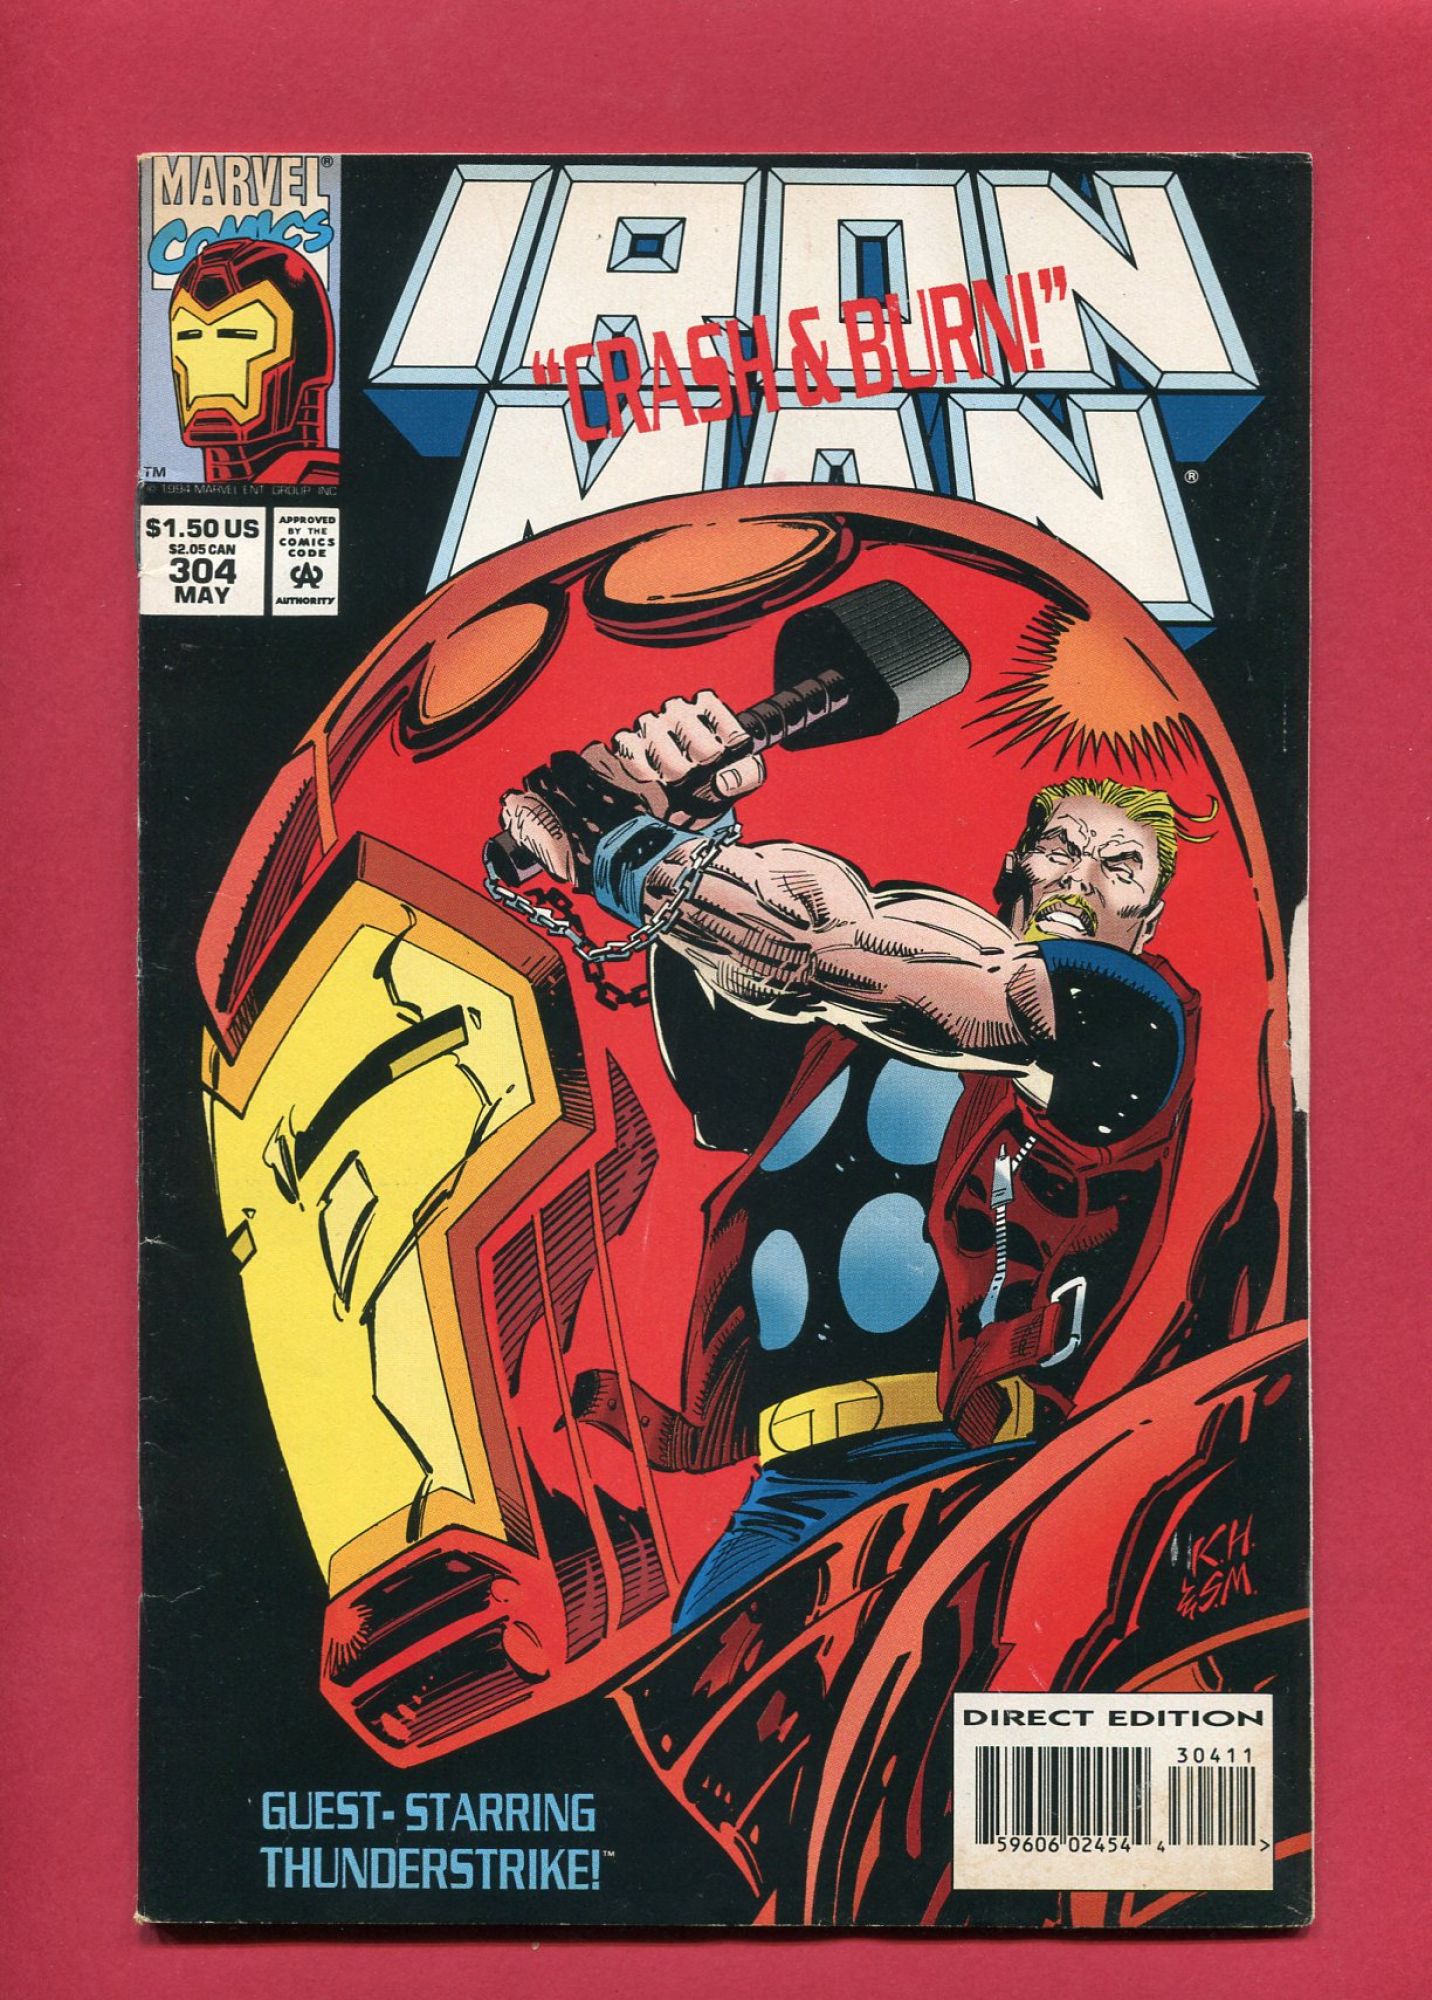 Iron Man #304, May 1994, 6.0 FN